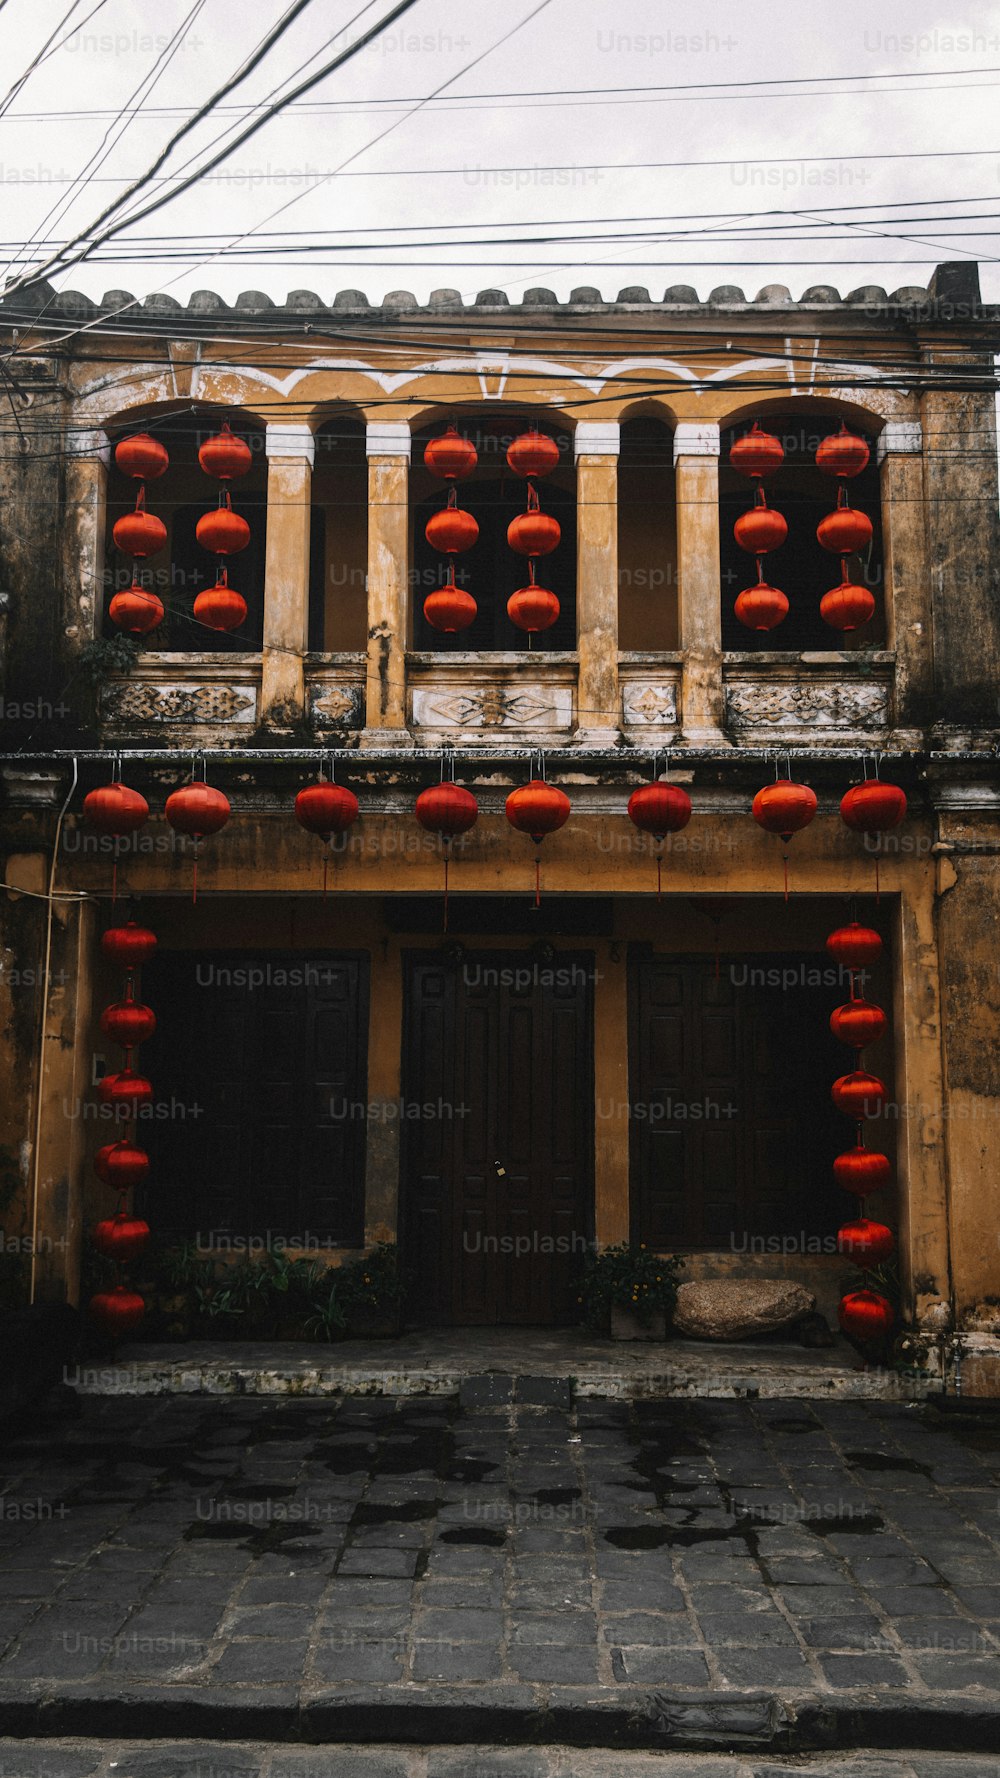 Un edificio con linternas rojas colgando de sus ventanas